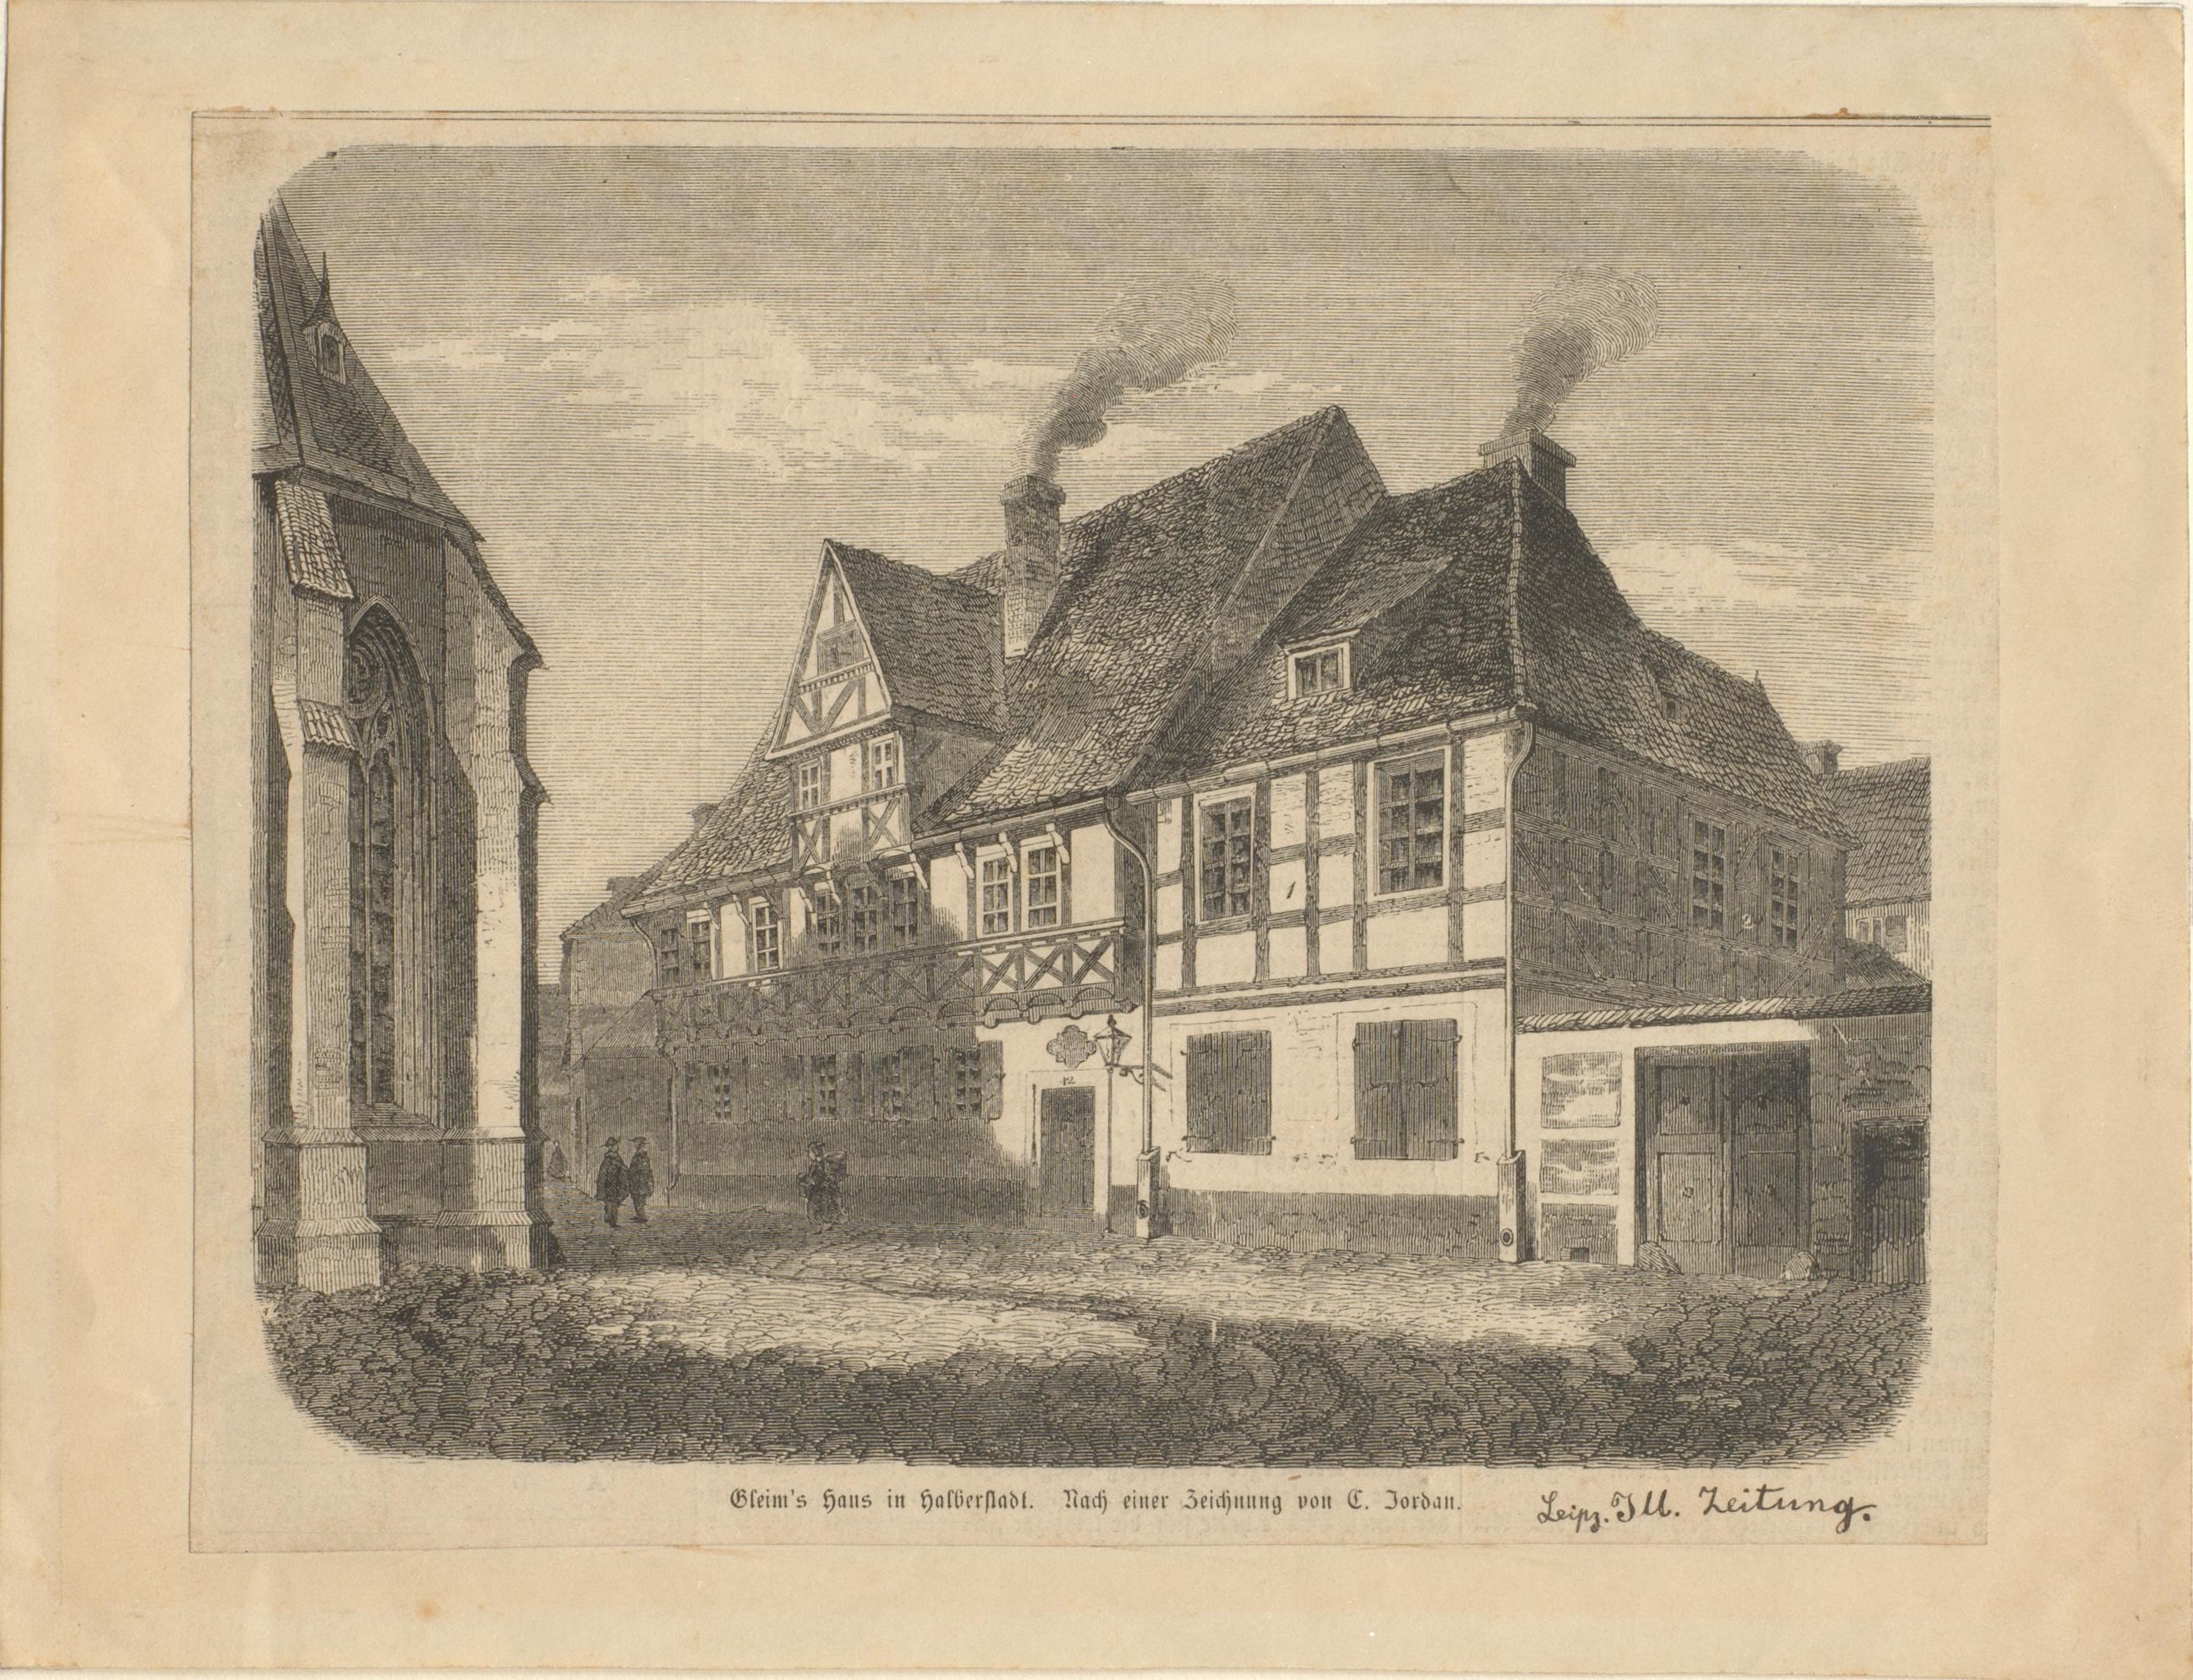 Text: Gleimกไs Haus in Halberstadt. Nach einer Zeichnung von C. Jordan. aus Leipziger Illustrirte Zeitung (Gleimhaus CC BY-NC-SA)